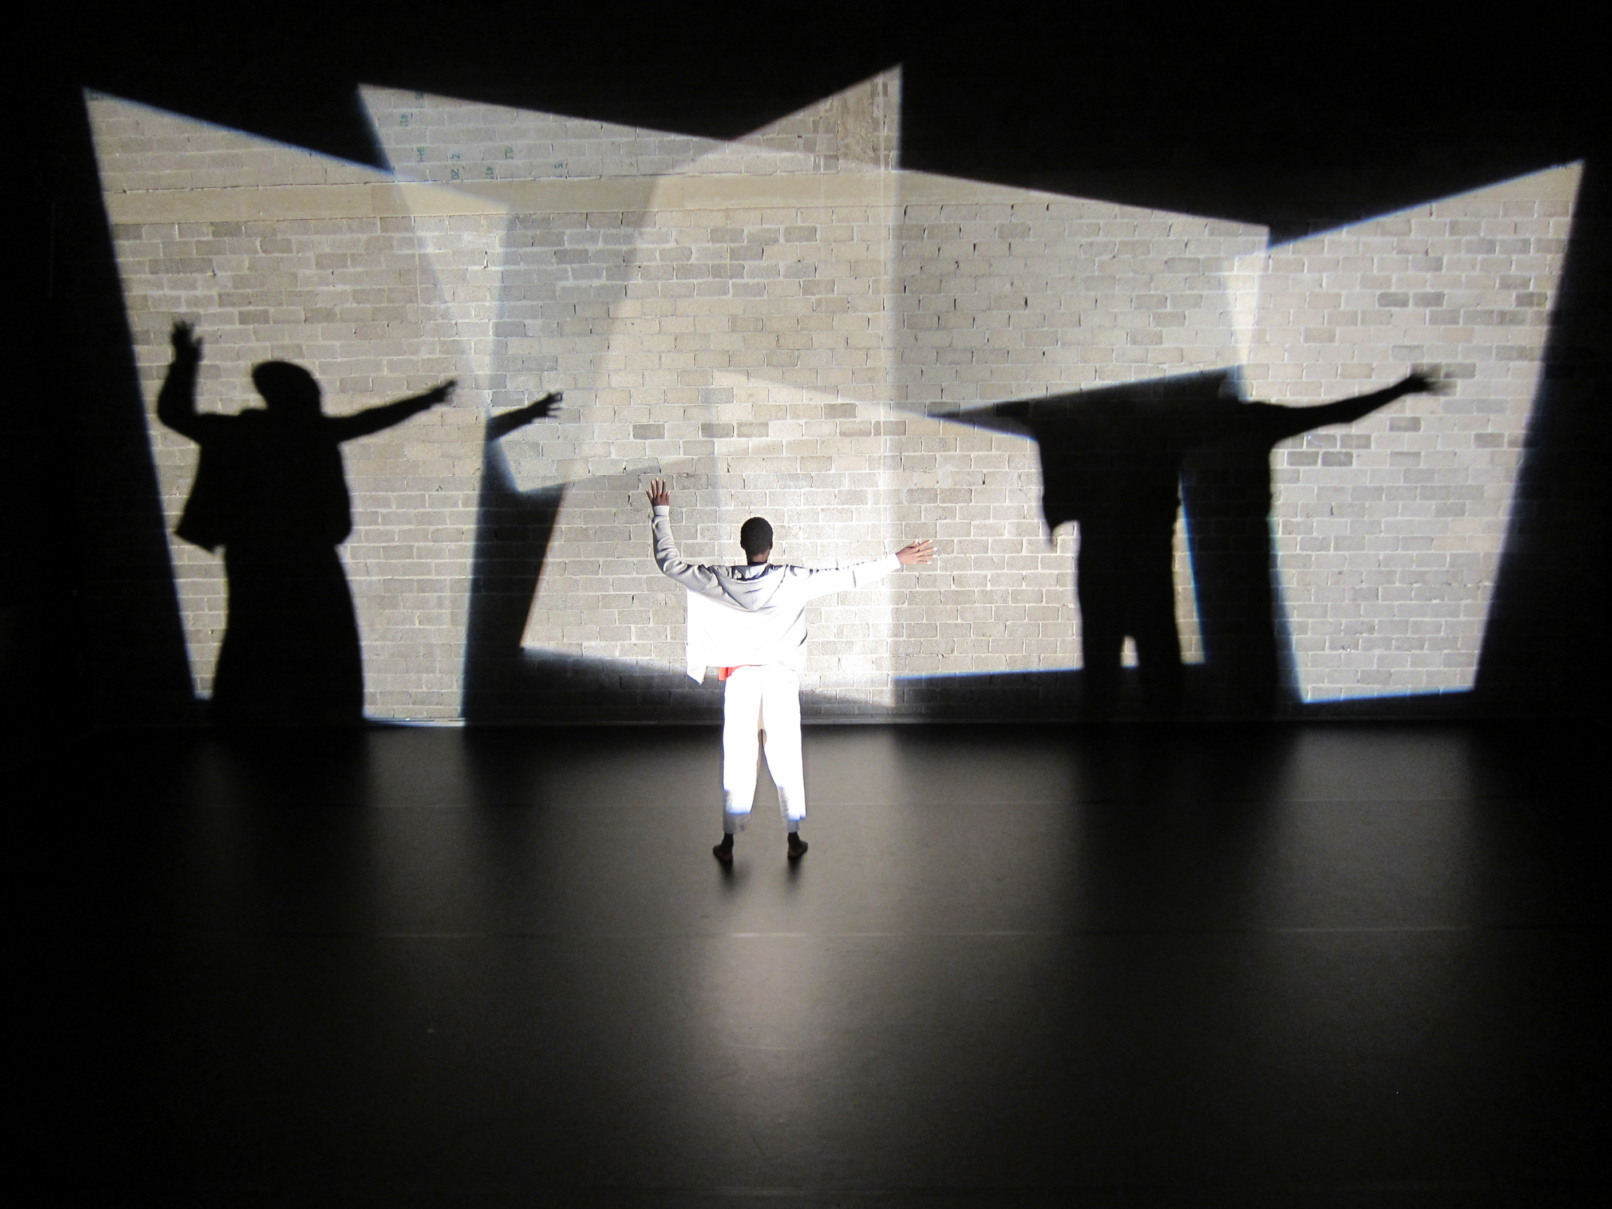 Licht-Bühnenbild für Dubito ergo sum, Tanzperformance von Morgan Nardi, 2011, Profiler, Beamer, Licht, Tanzhaus NRW, Düsseldorf